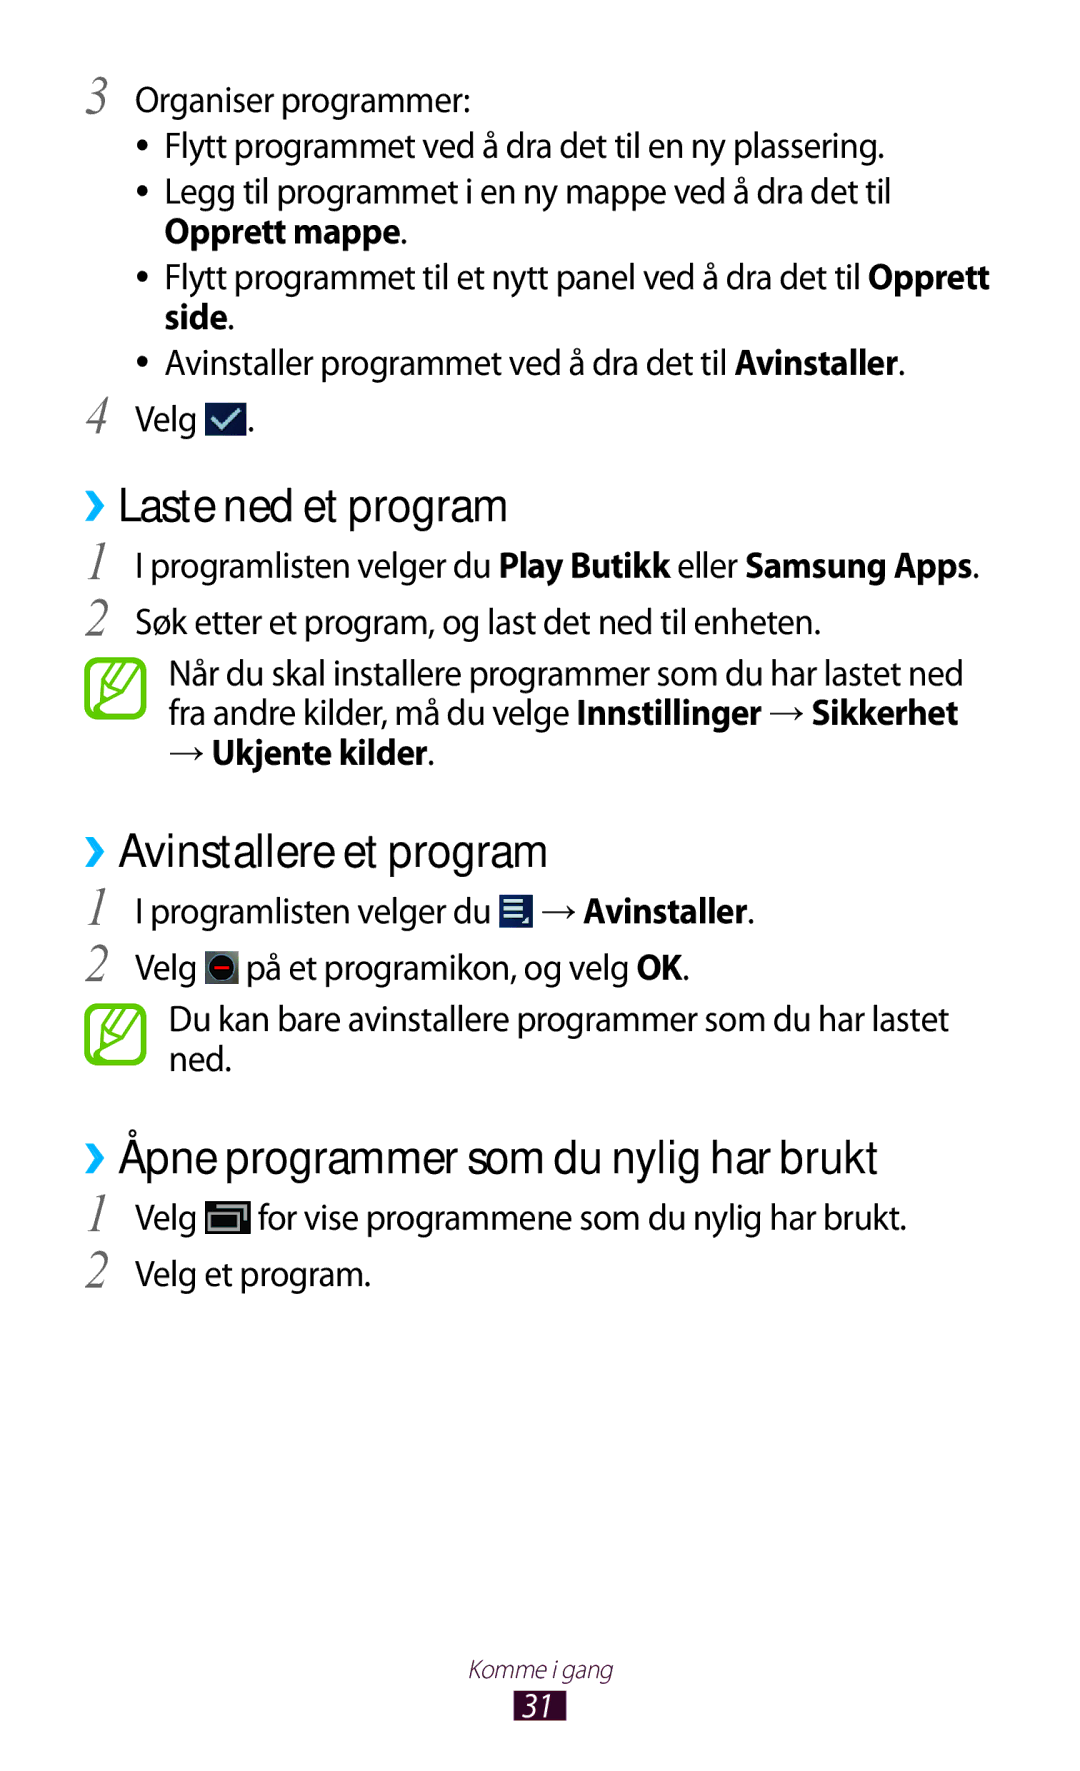 Samsung GT-P3100ZWANEE manual ››Laste ned et program, ››Avinstallere et program, ››Åpne programmer som du nylig har brukt 